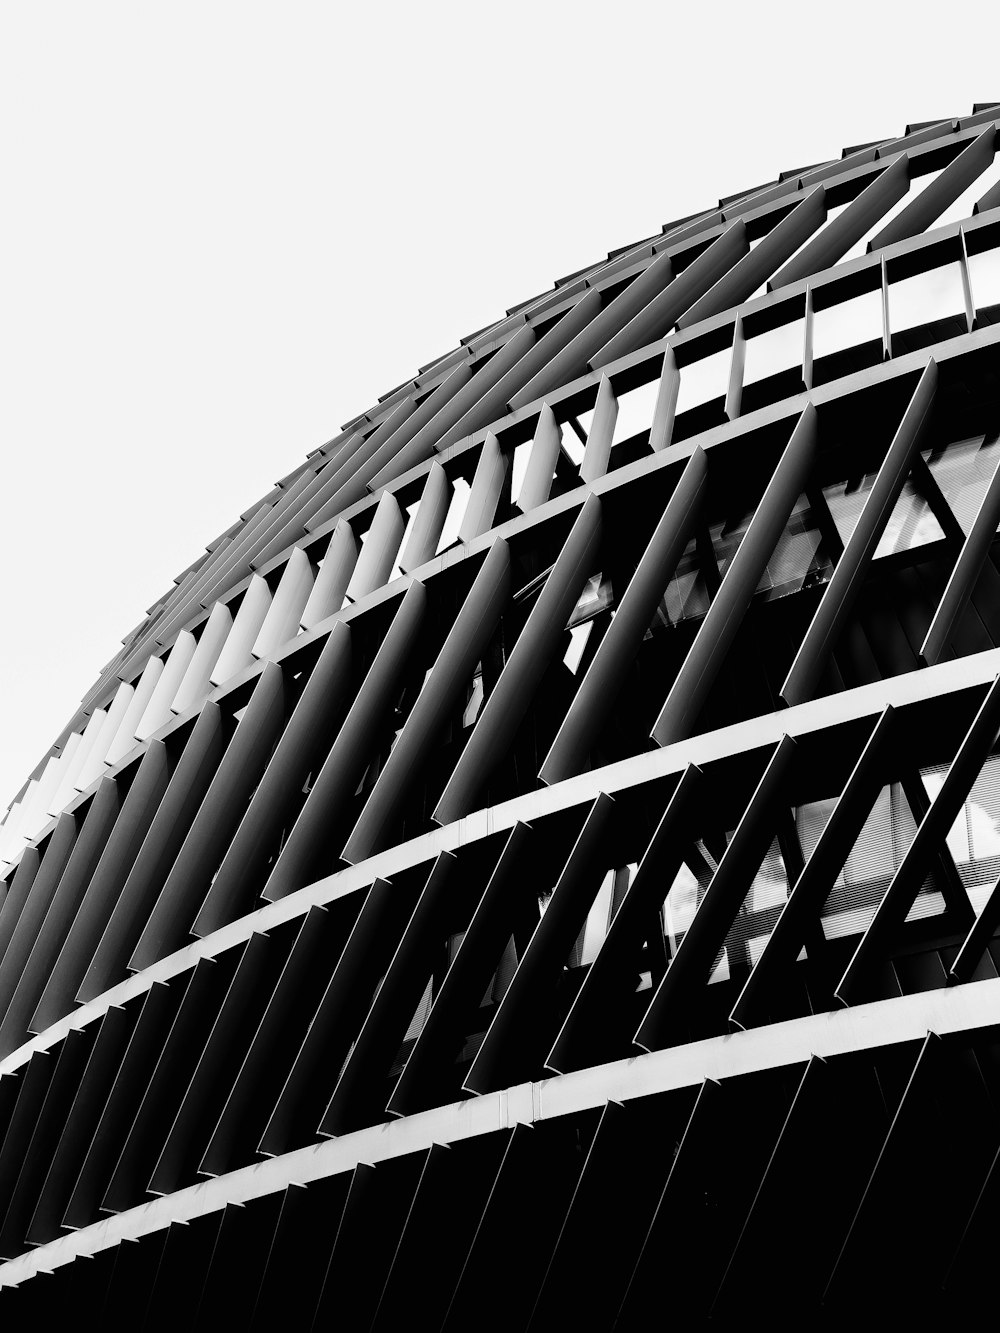 円形の建物の白黒写真